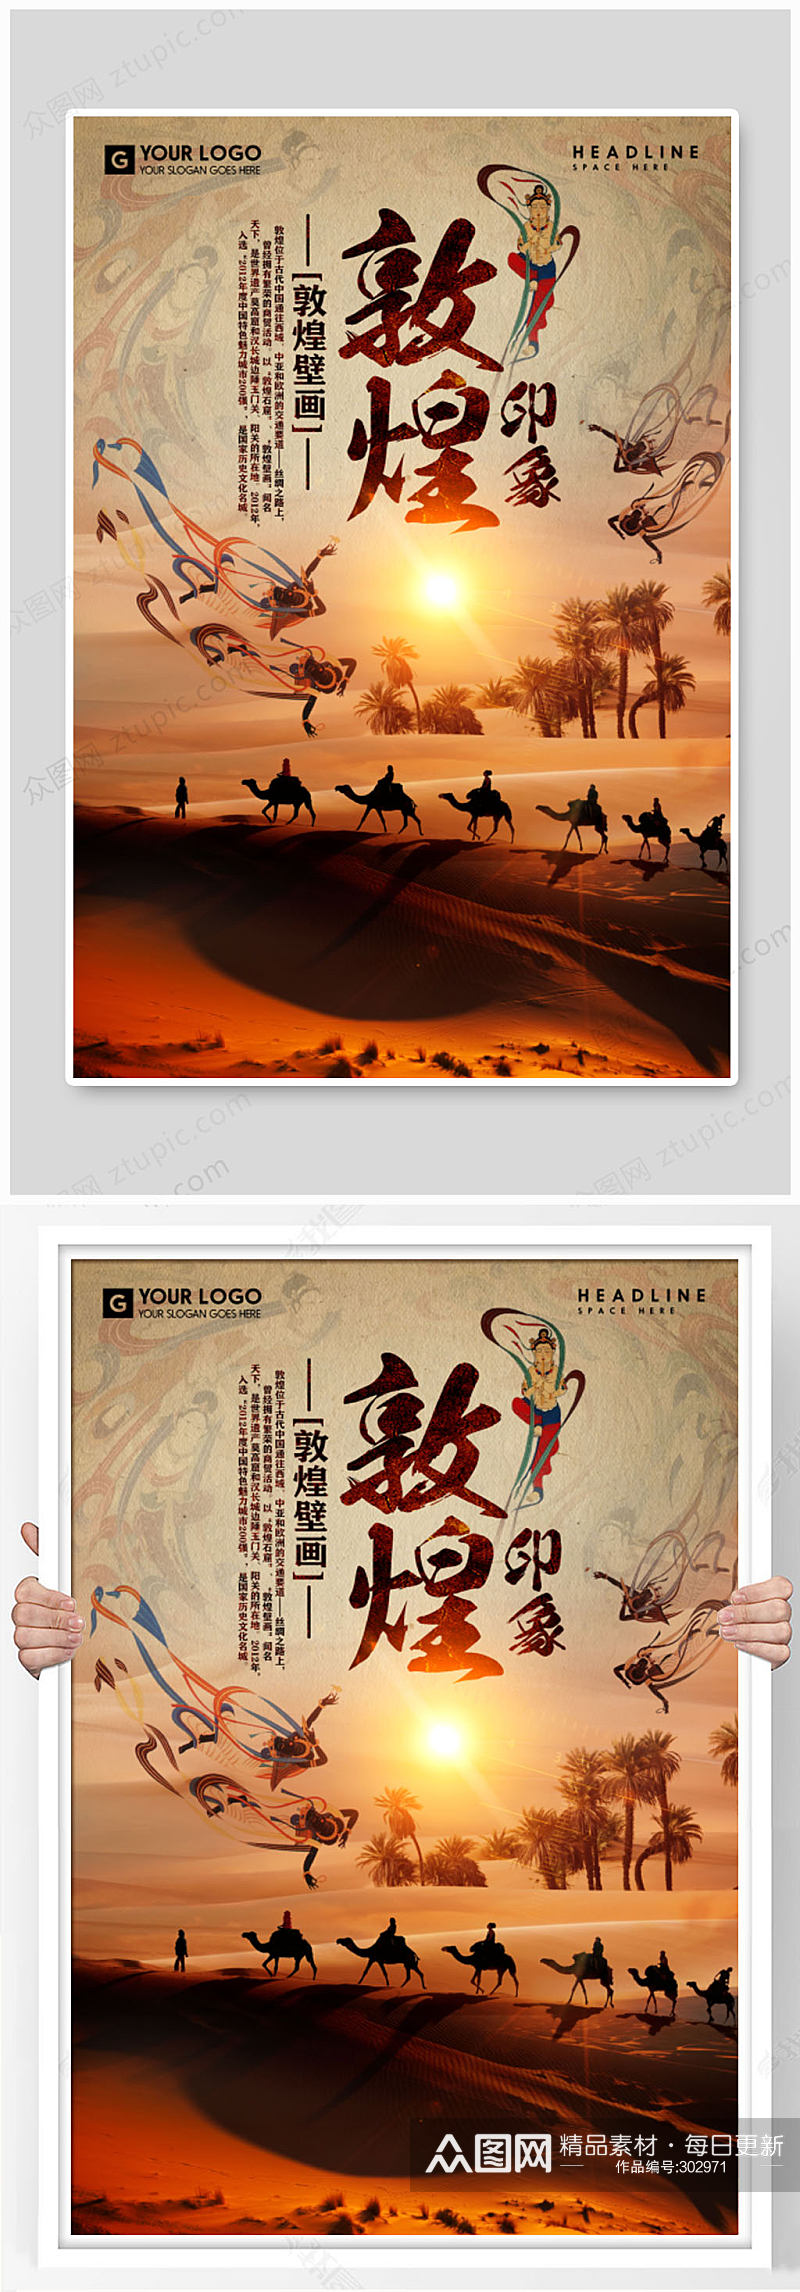 敦煌壁画沙漠旅游海报素材